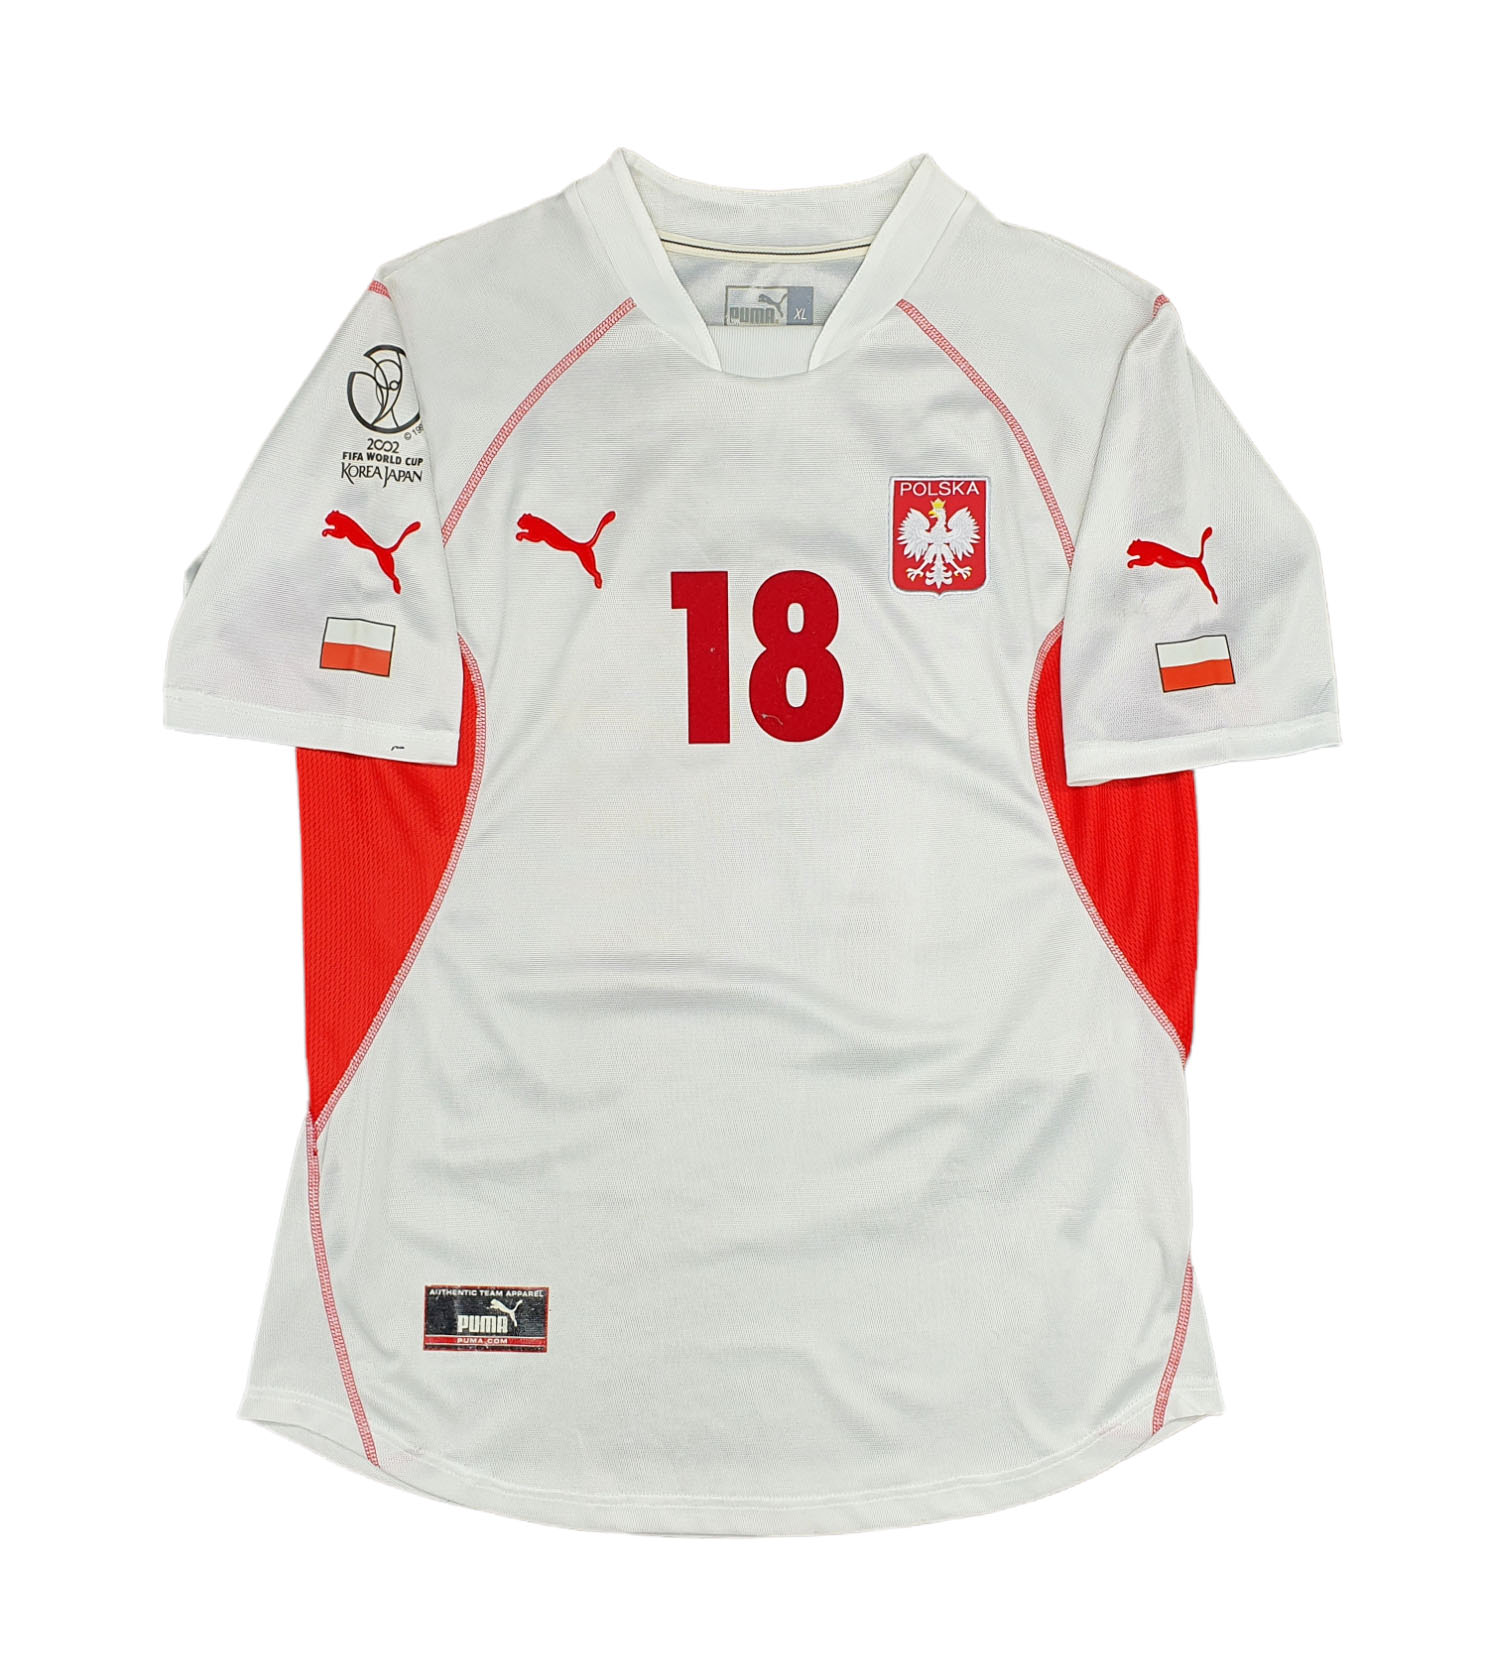 escotilla Dinámica Escoba Polonia 2002 maglia Puma Krzynowek #18 home matchworn » BOLA Football Store